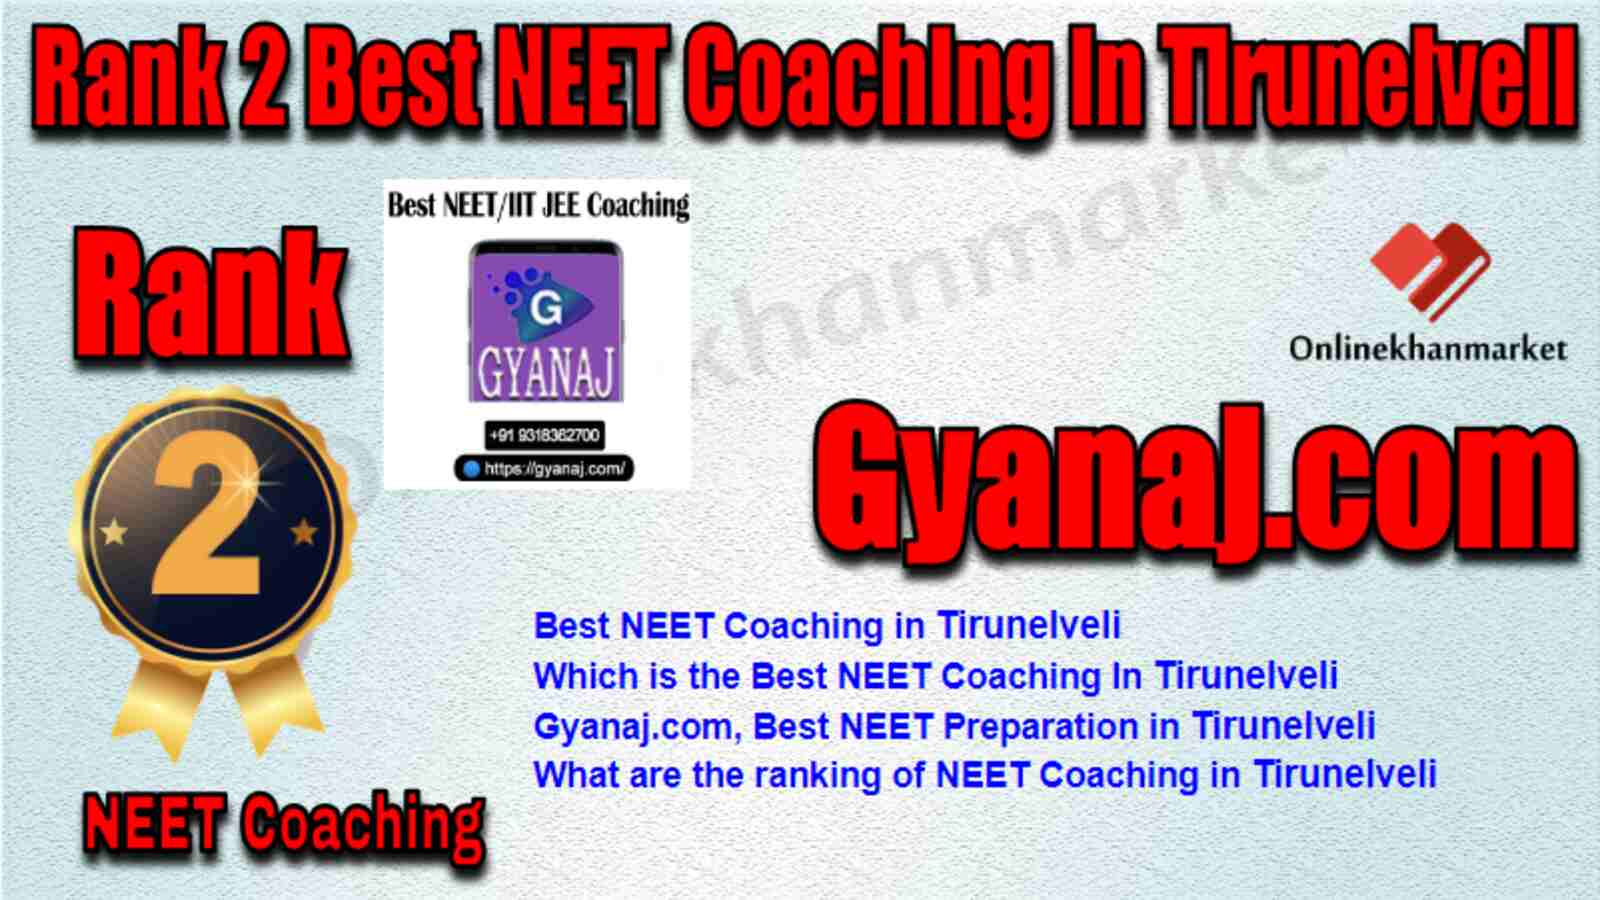 Rank 2 Best NEET Coaching in Tirunelveli